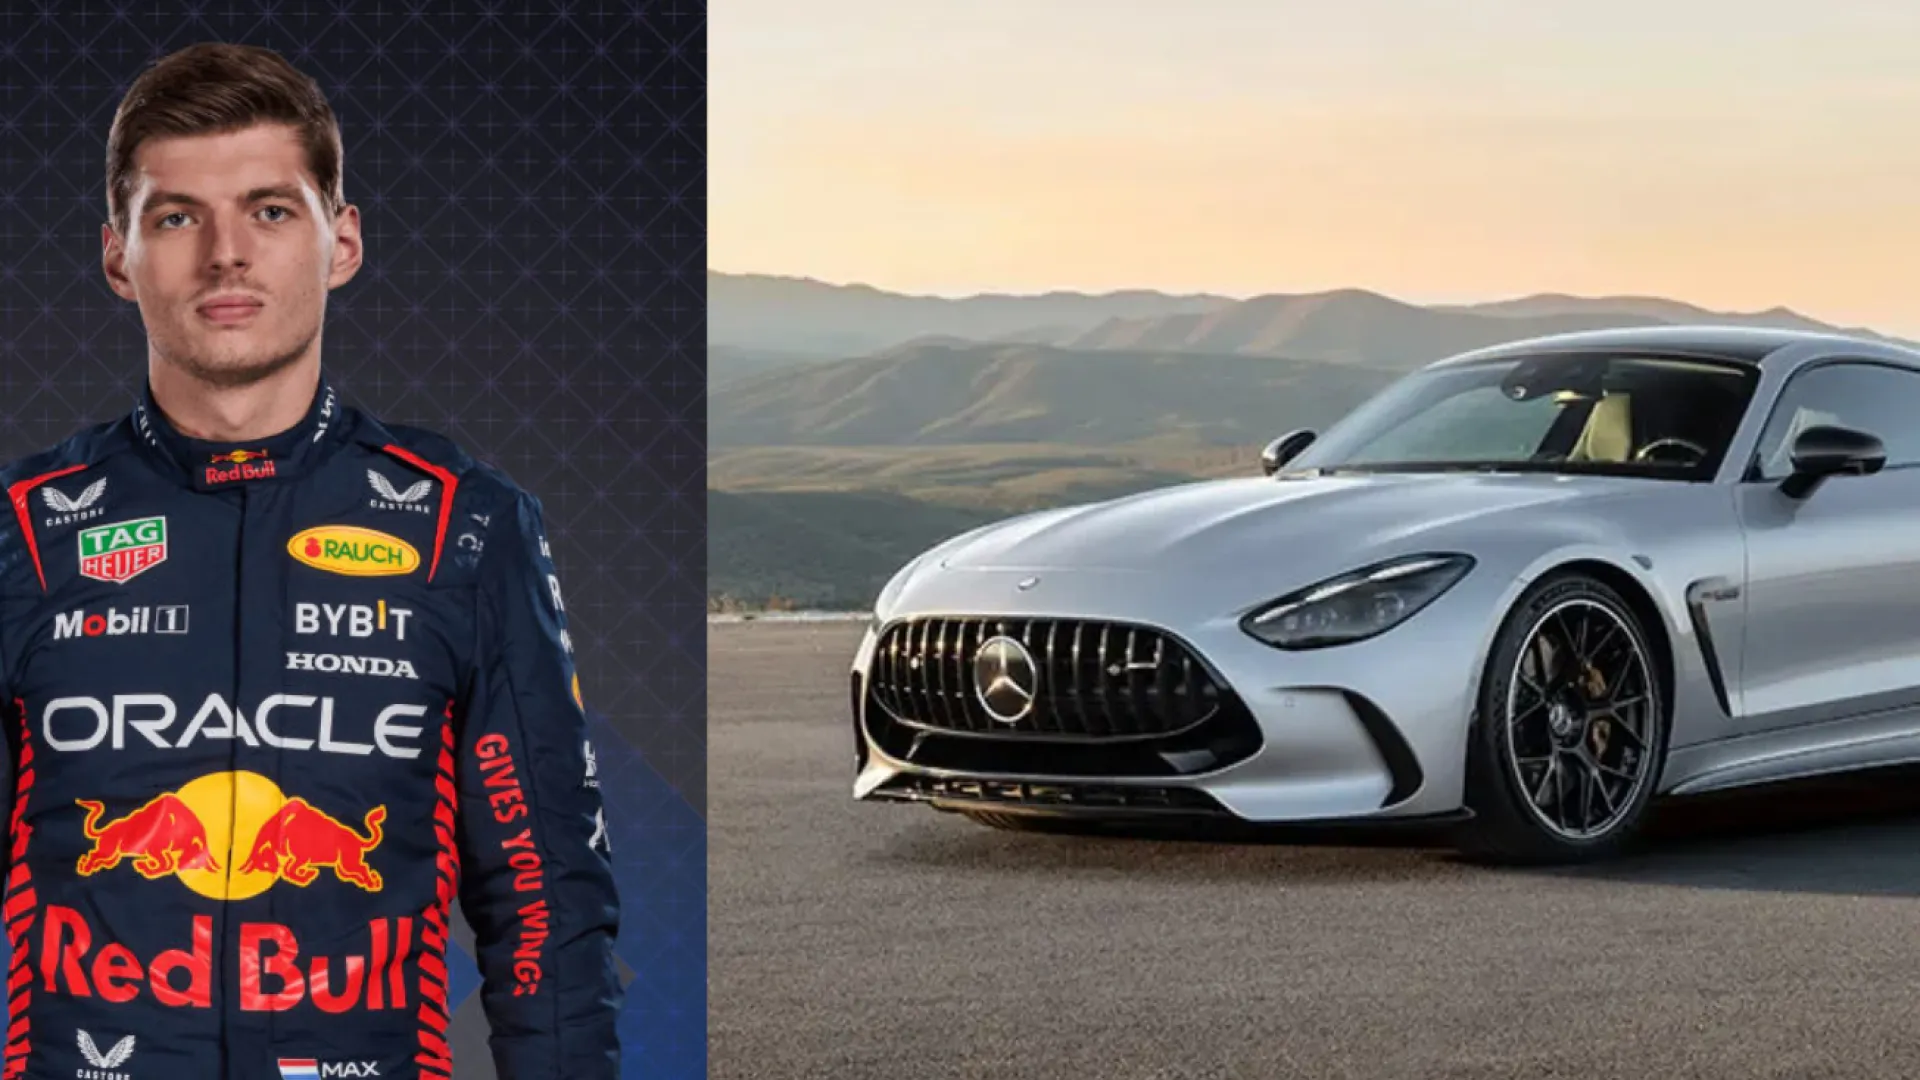 Le pilote de F1 Max Verstappen se voit refuser la location d’une Mercedes-AMG GT